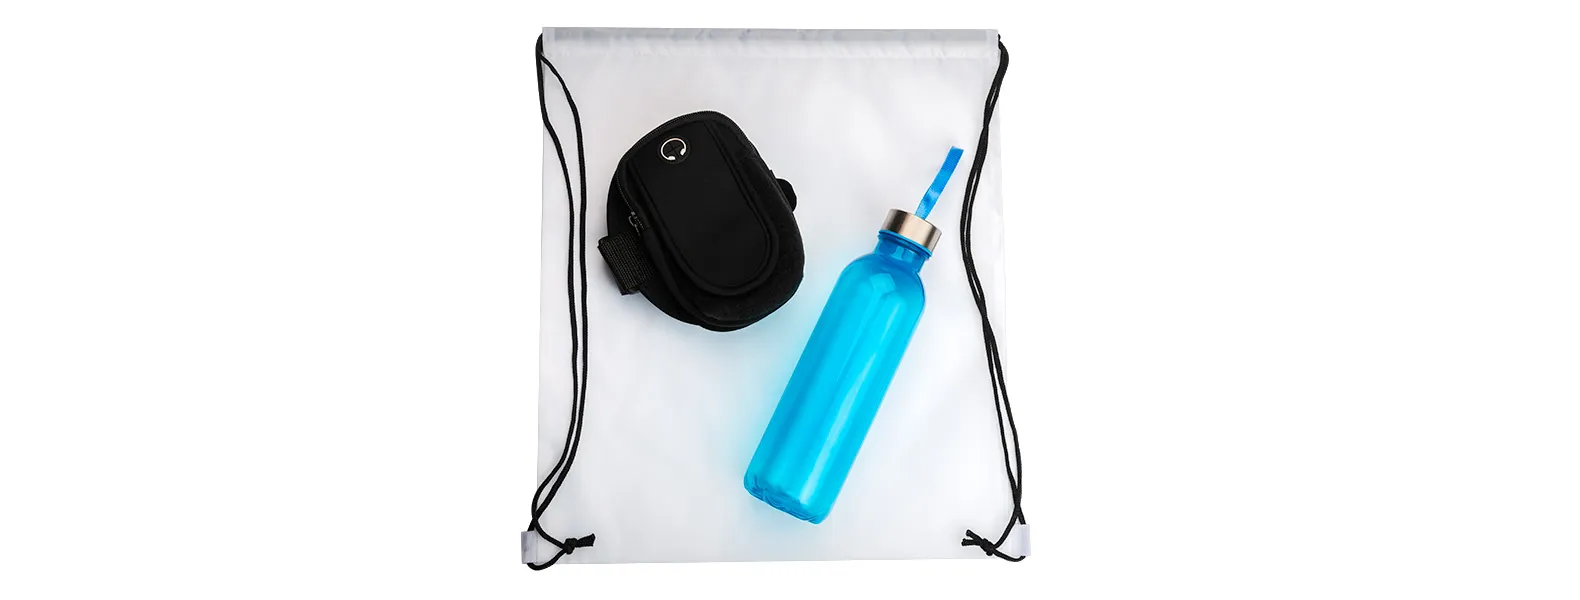 Kit boas vindas. Conta com mochila em nylon 420 branca; garrafa pet na cor azul e braçadeira esportiva para celular.